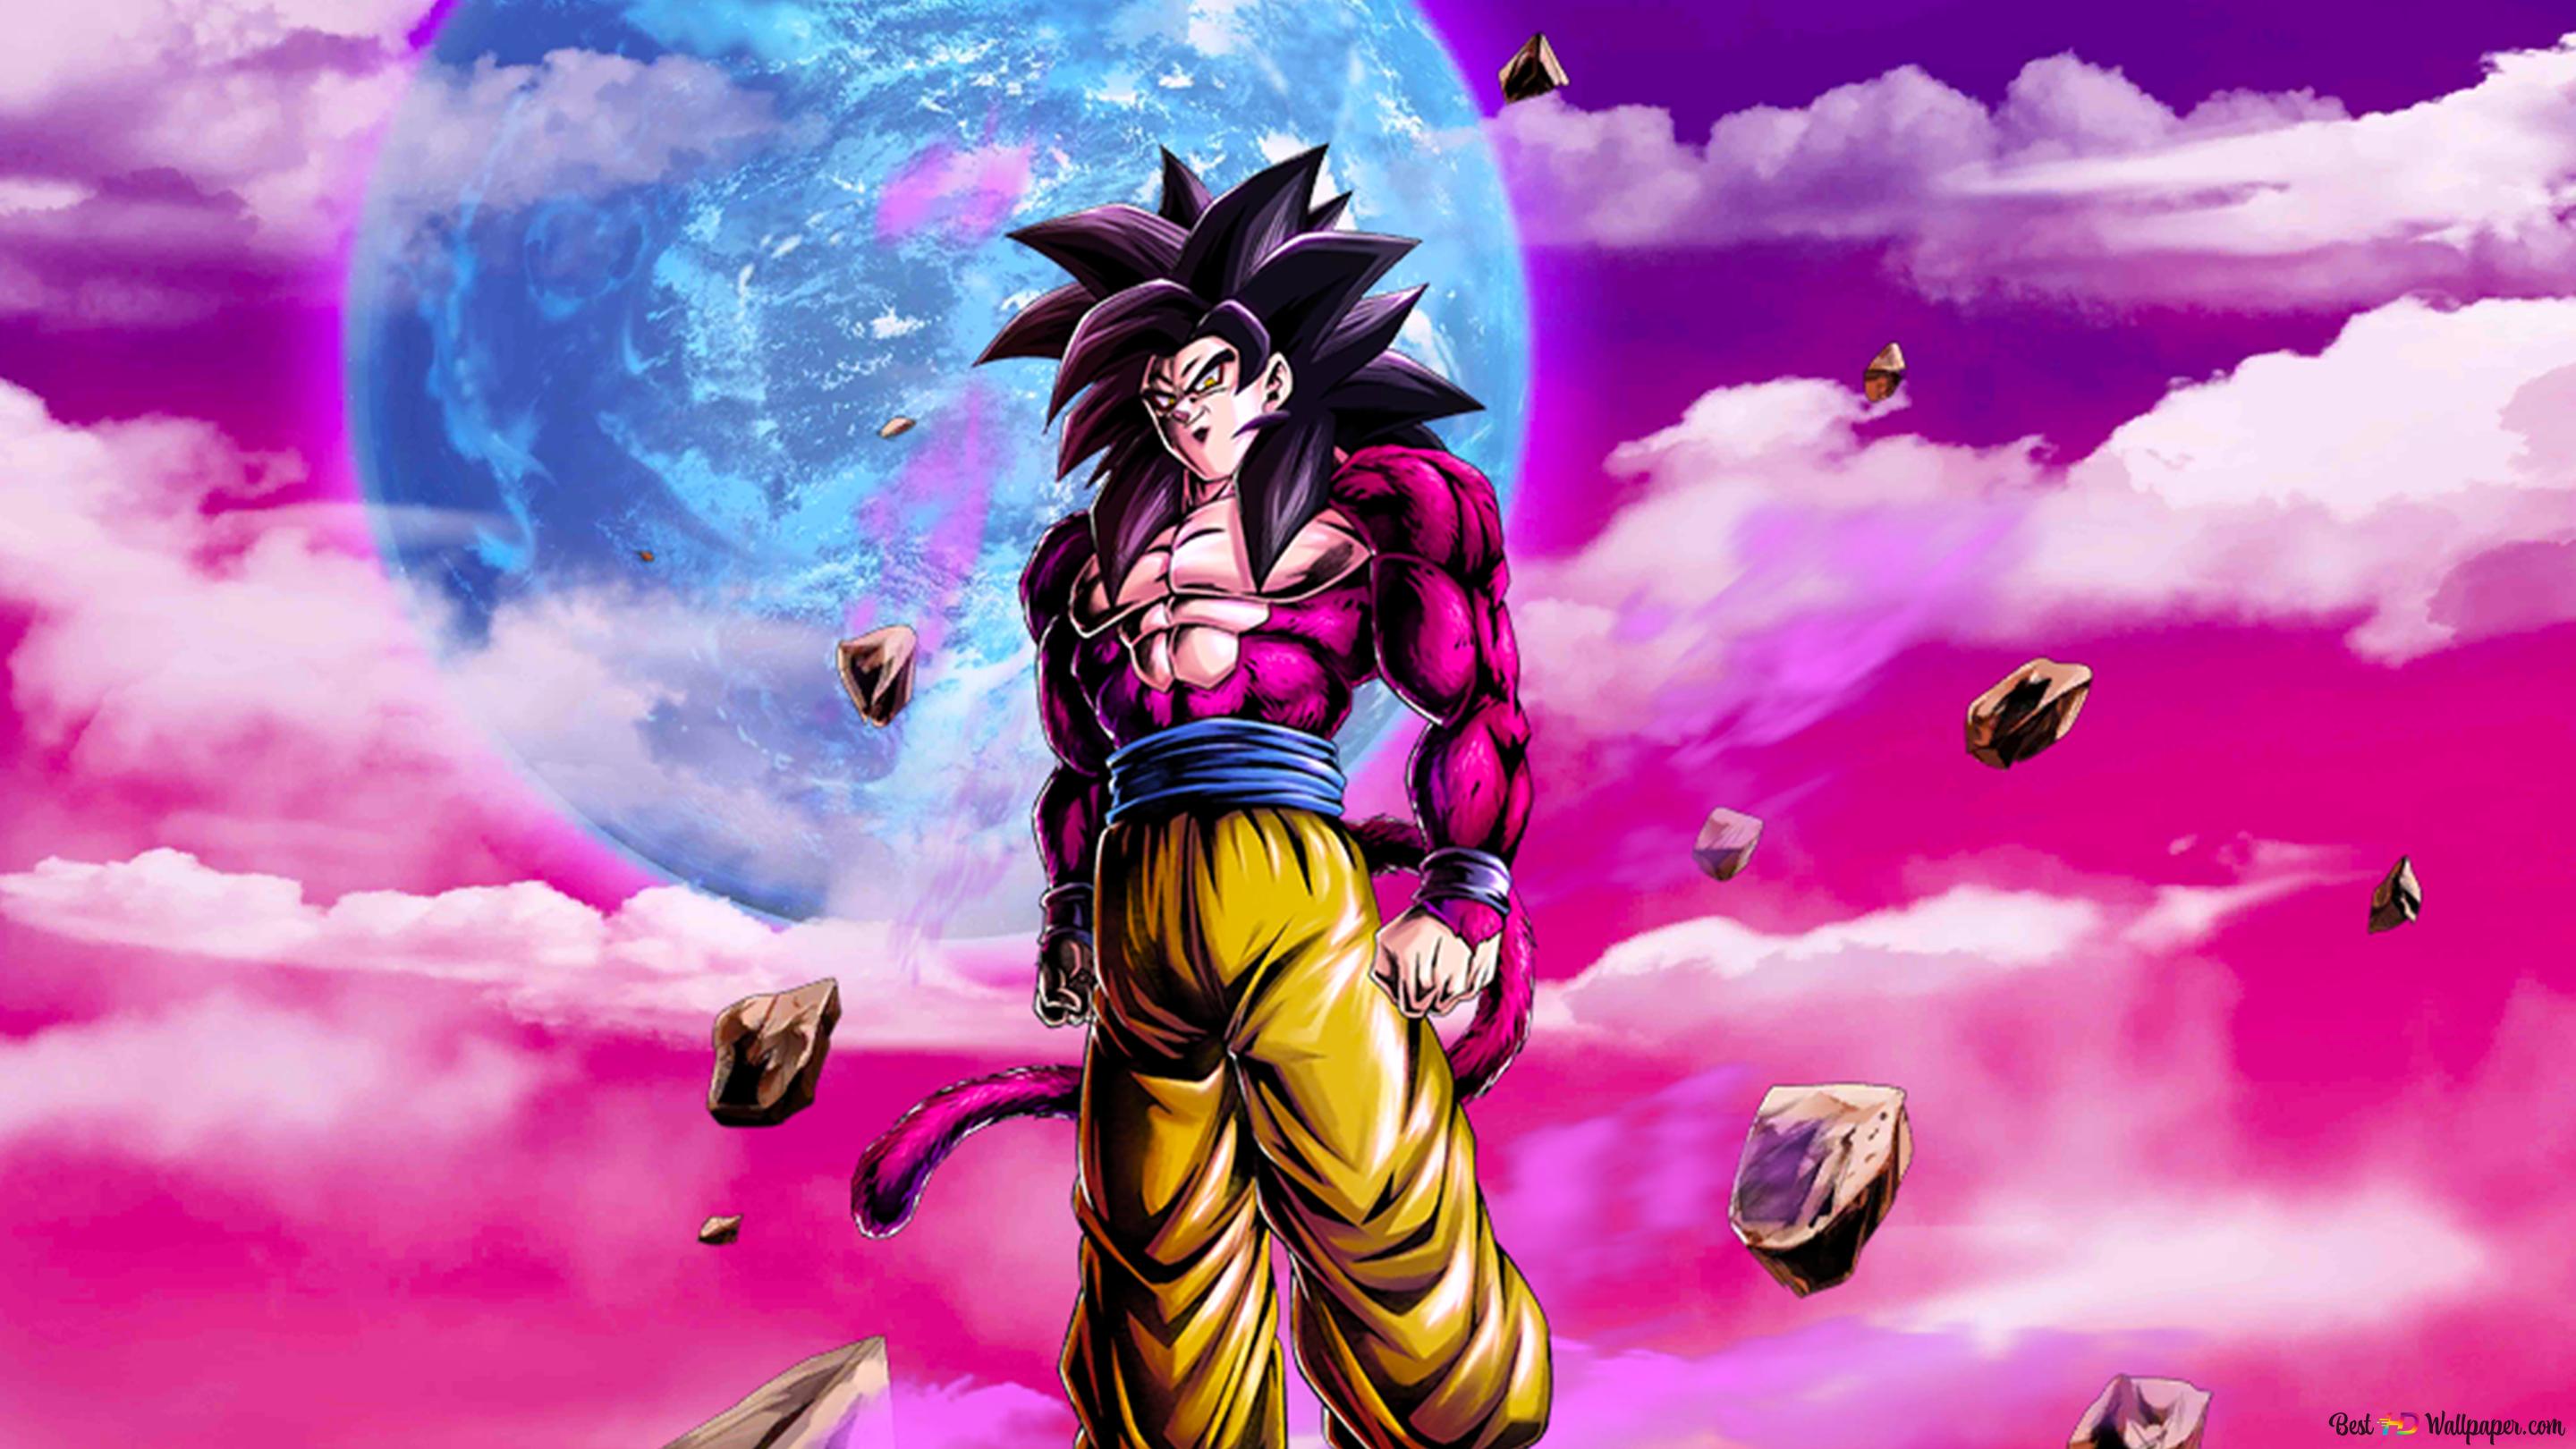 Goku super saiyan von dragon ball gt dragon ball legends arts fãr desktop k hintergrundbild herunterladen